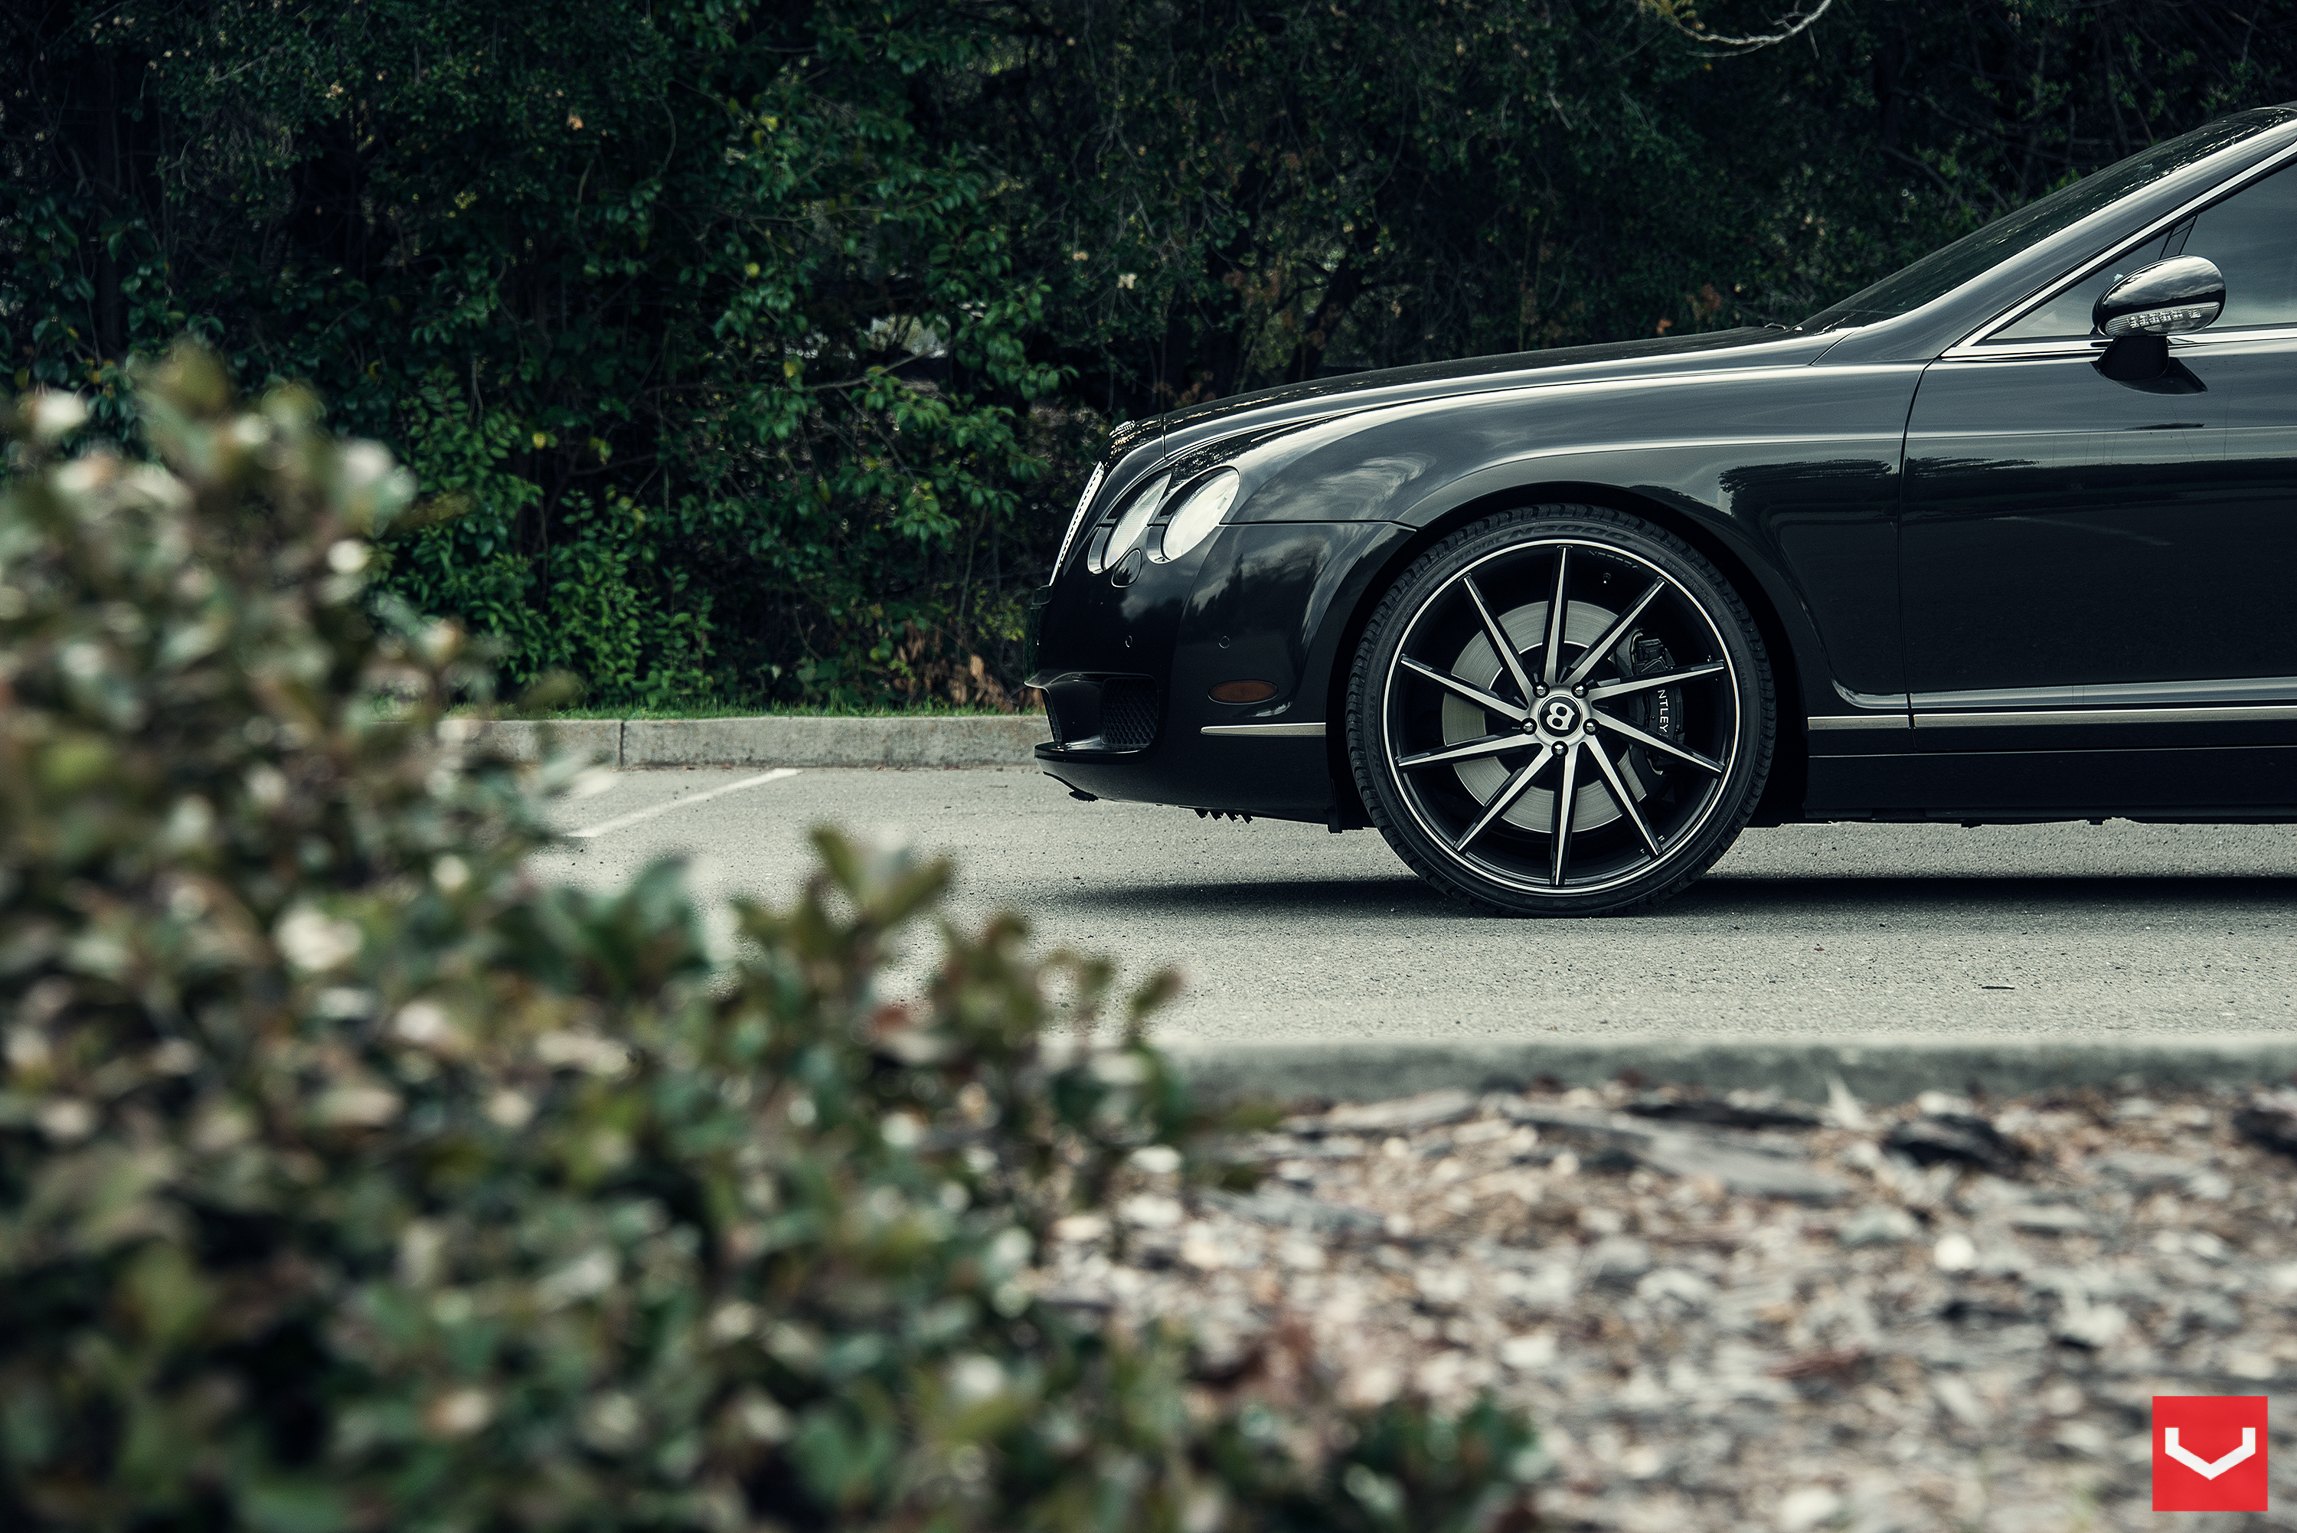 Vossen CVT Series Wheels on Bentley Continental - Photo by Vossen